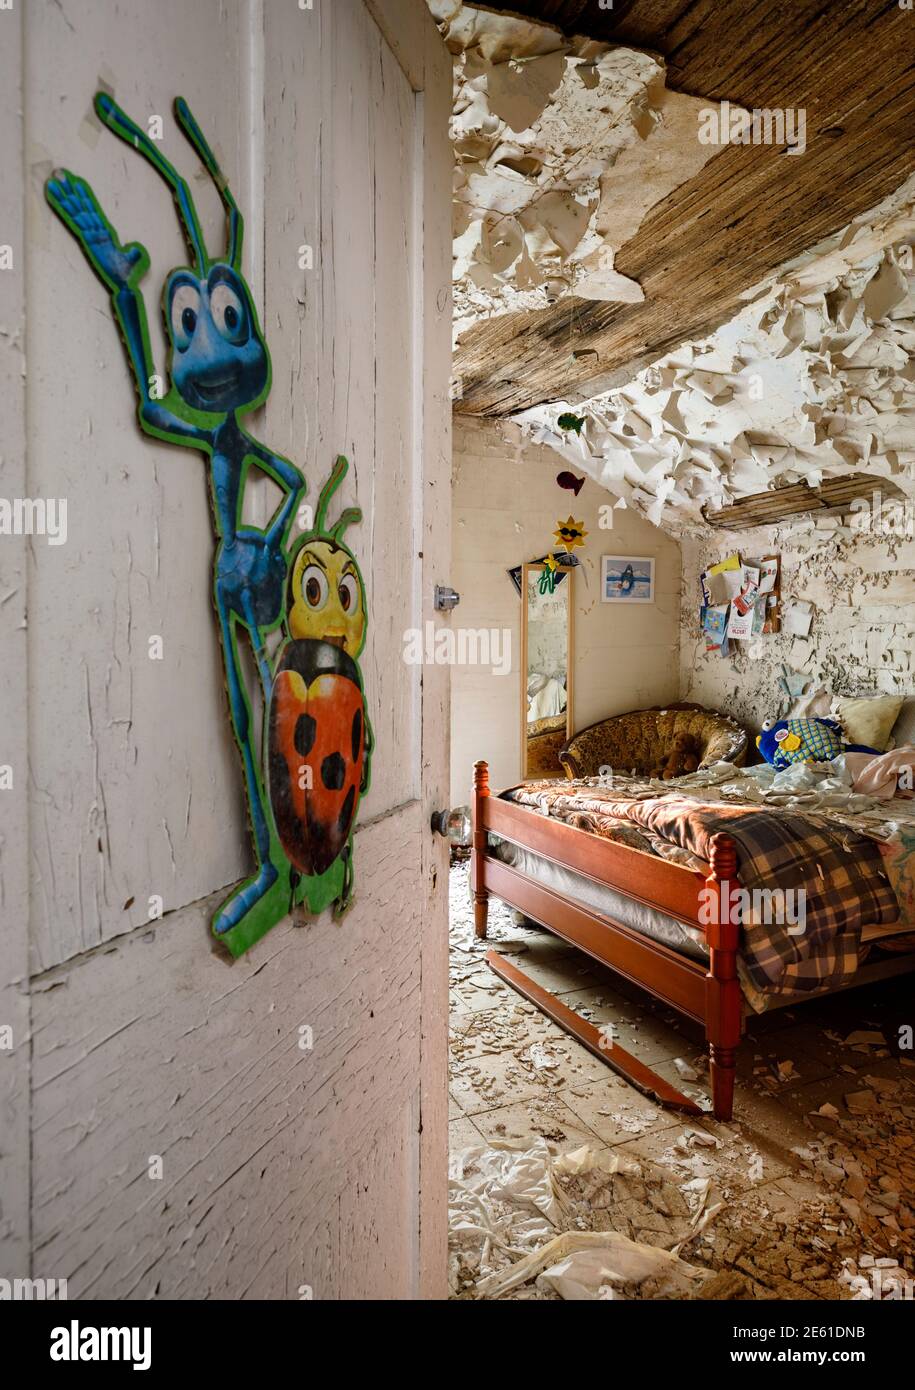 Une chambre désordonnée à l'intérieur d'une maison abandonnée avec des jouets pour enfants et des œuvres d'art sur les murs et de la peinture écaillée. Ontario, Canada. Banque D'Images